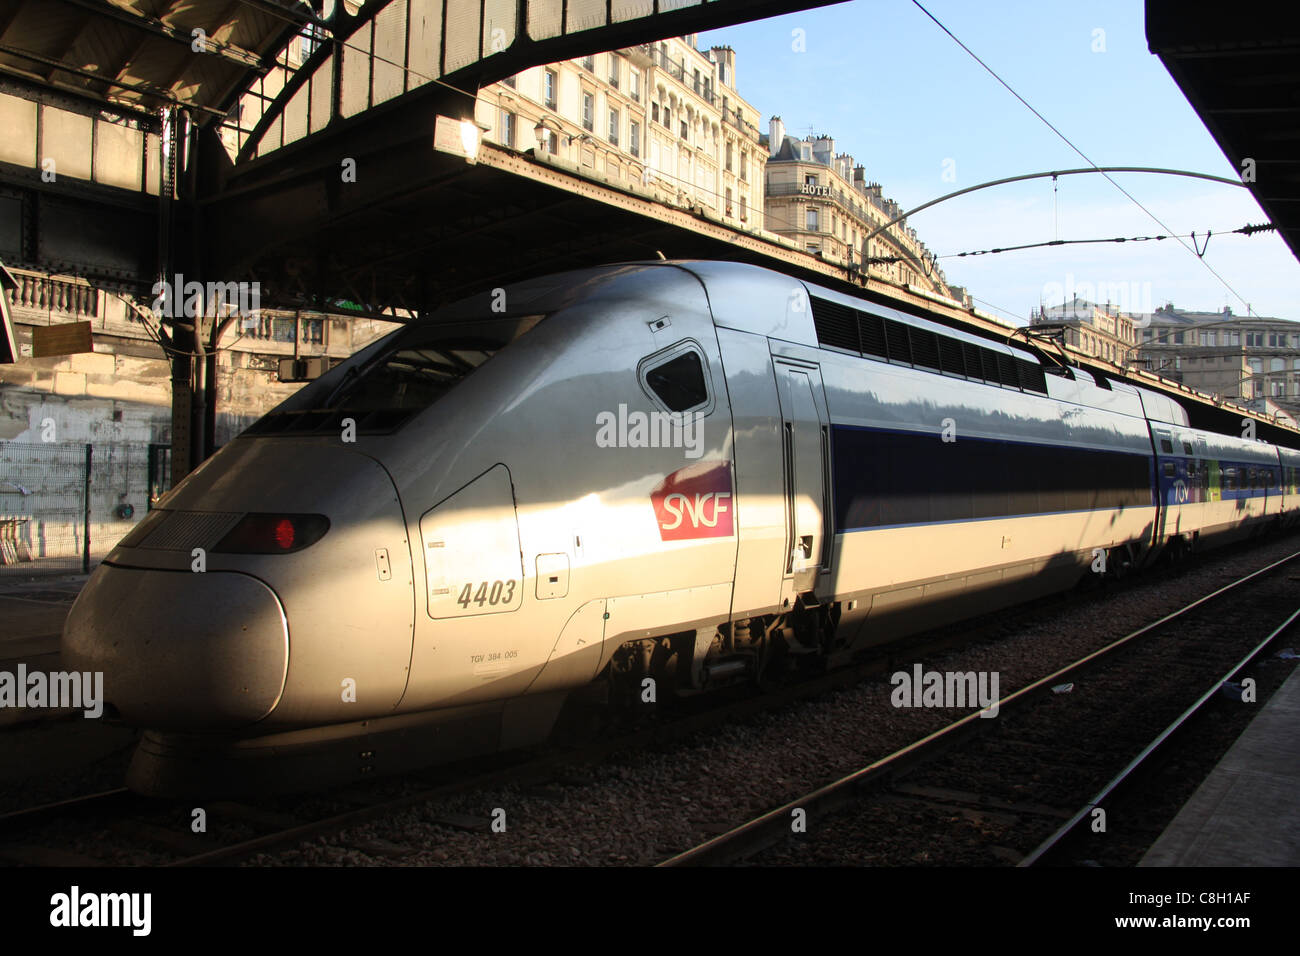 Paris, Gare de l'Est, railway station, train, railroad, transport, TGV, express, locomotive, engine Stock Photo